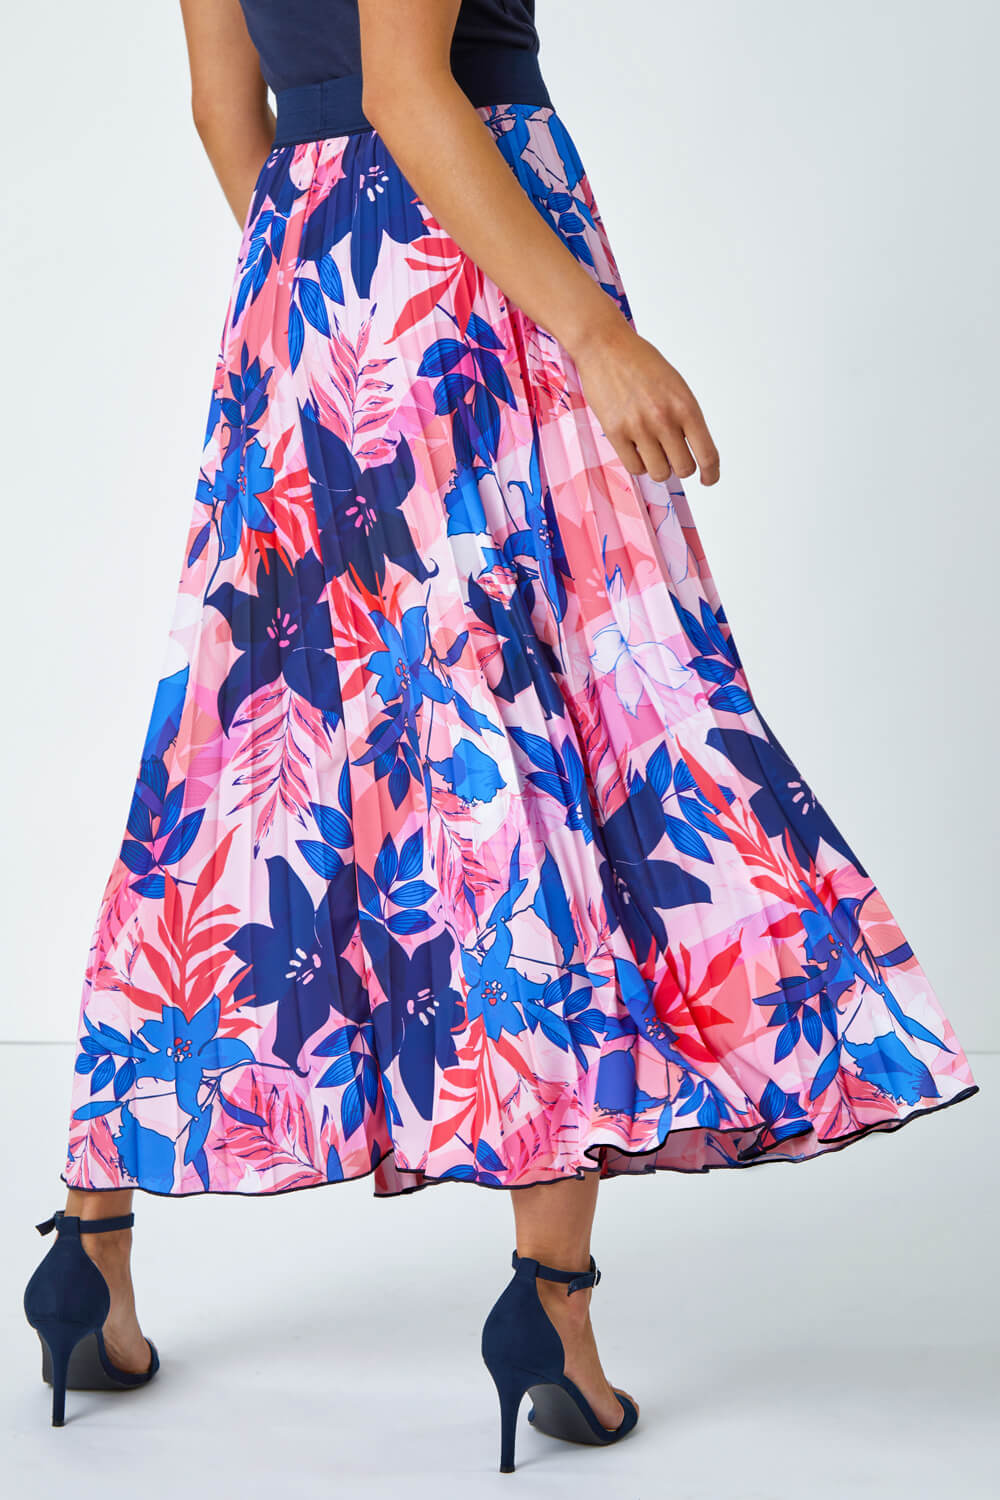 PINK Petite Pleated Floral Midi Skirt, Image 3 of 5